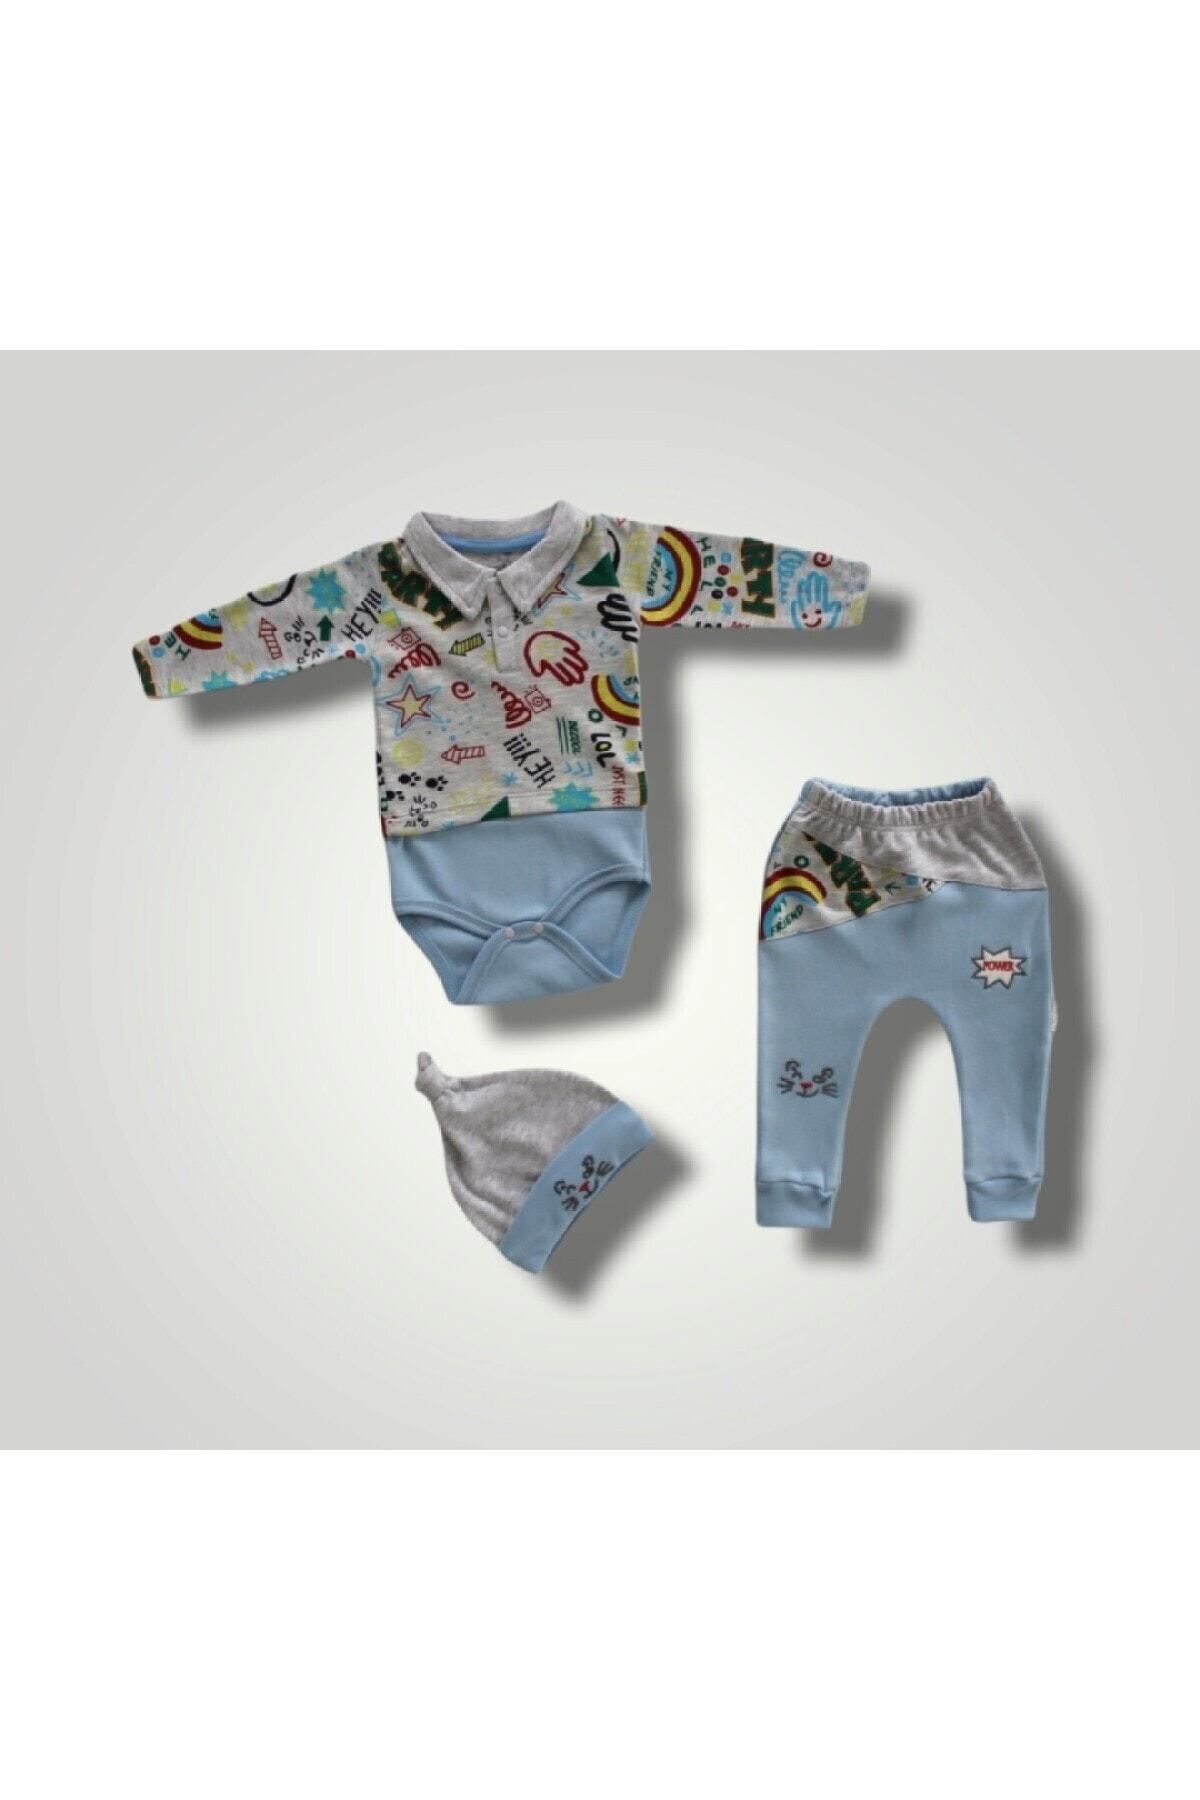 Tomuycuk 3lü Mavi Erkek Bebek Takım 3-6-9-12 Ay Bebek Takımları Kıyafetleri Bebek Giyim Hediyelik